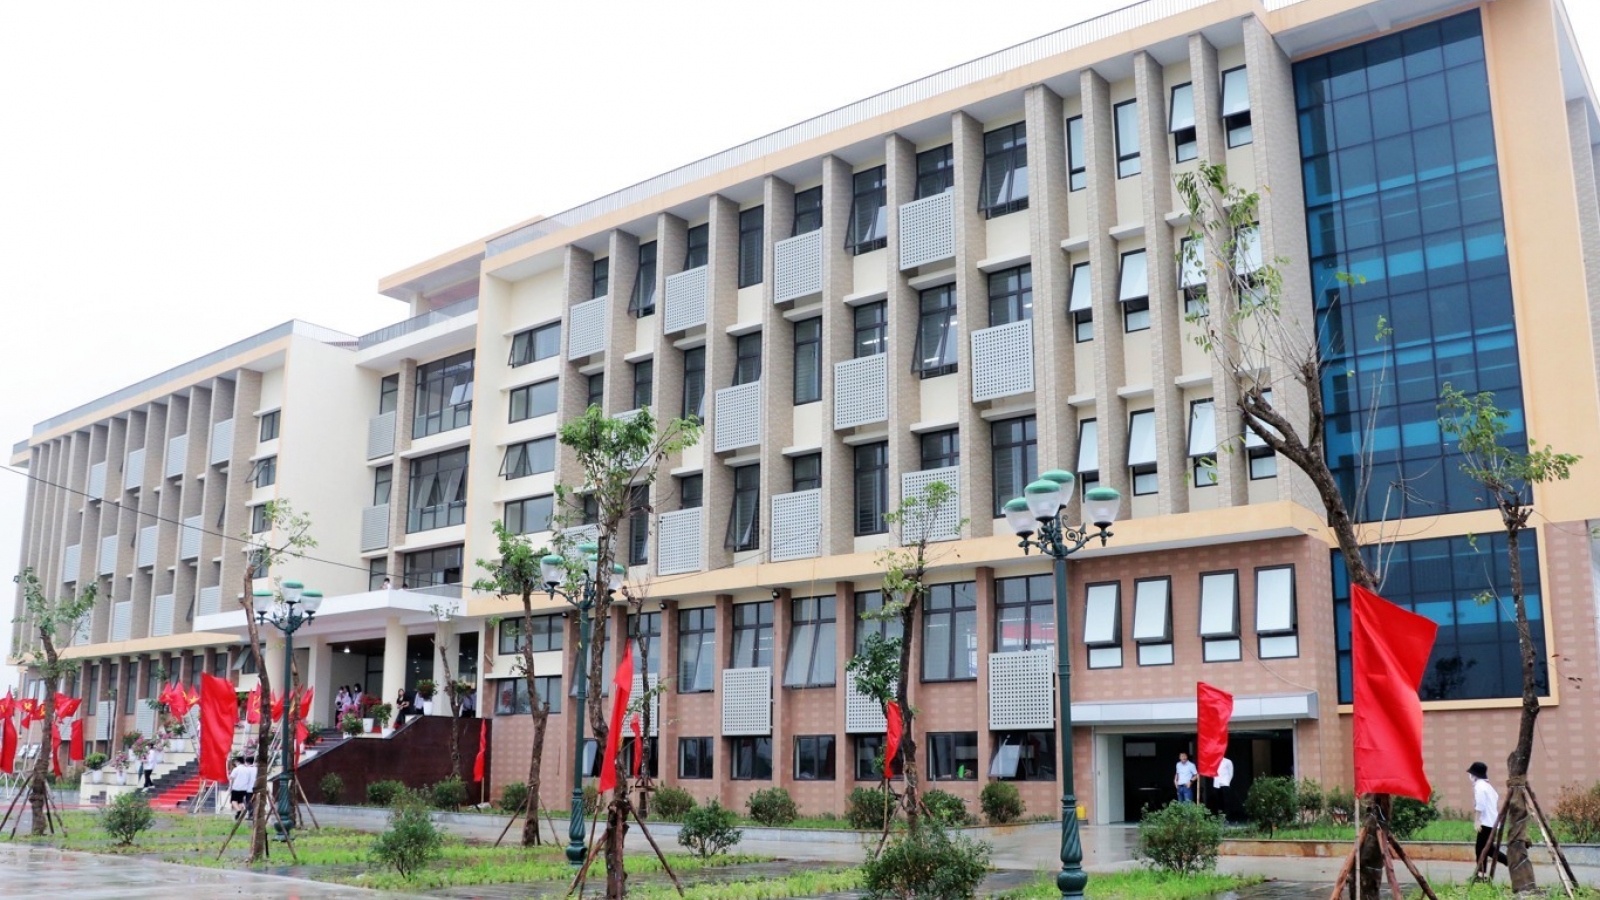 Bắc Ninh kiểm điểm 3 cá nhân để sai sót trong thực hiện Dự án Trường THCS Tiên Du